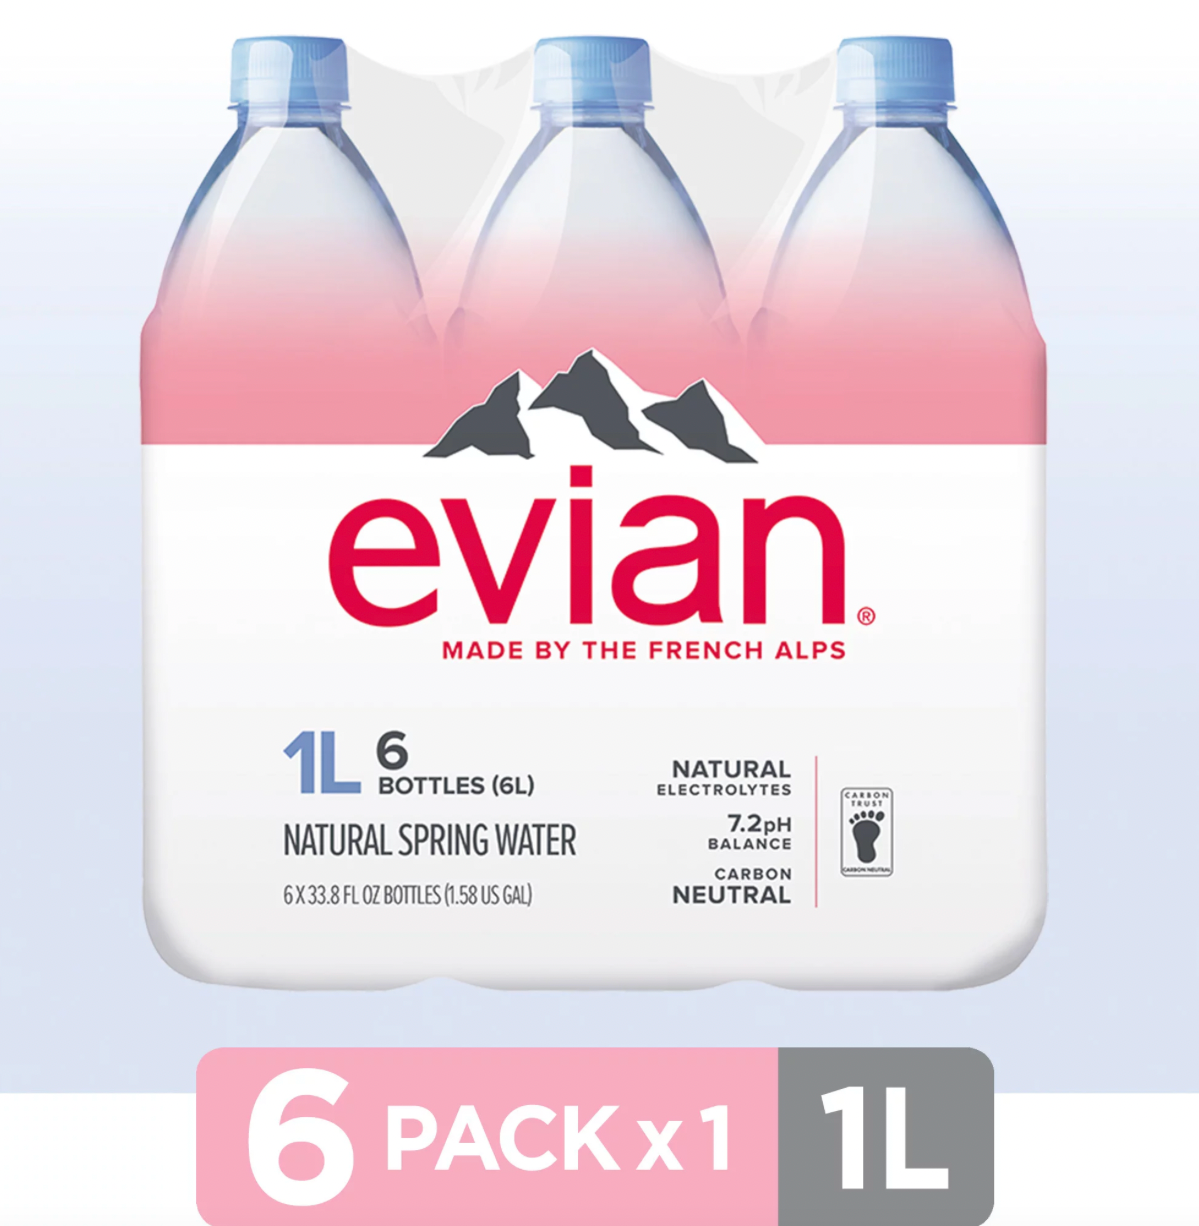 Evian Natural Spring Water bottles, 33.8 fl oz, 6 pack